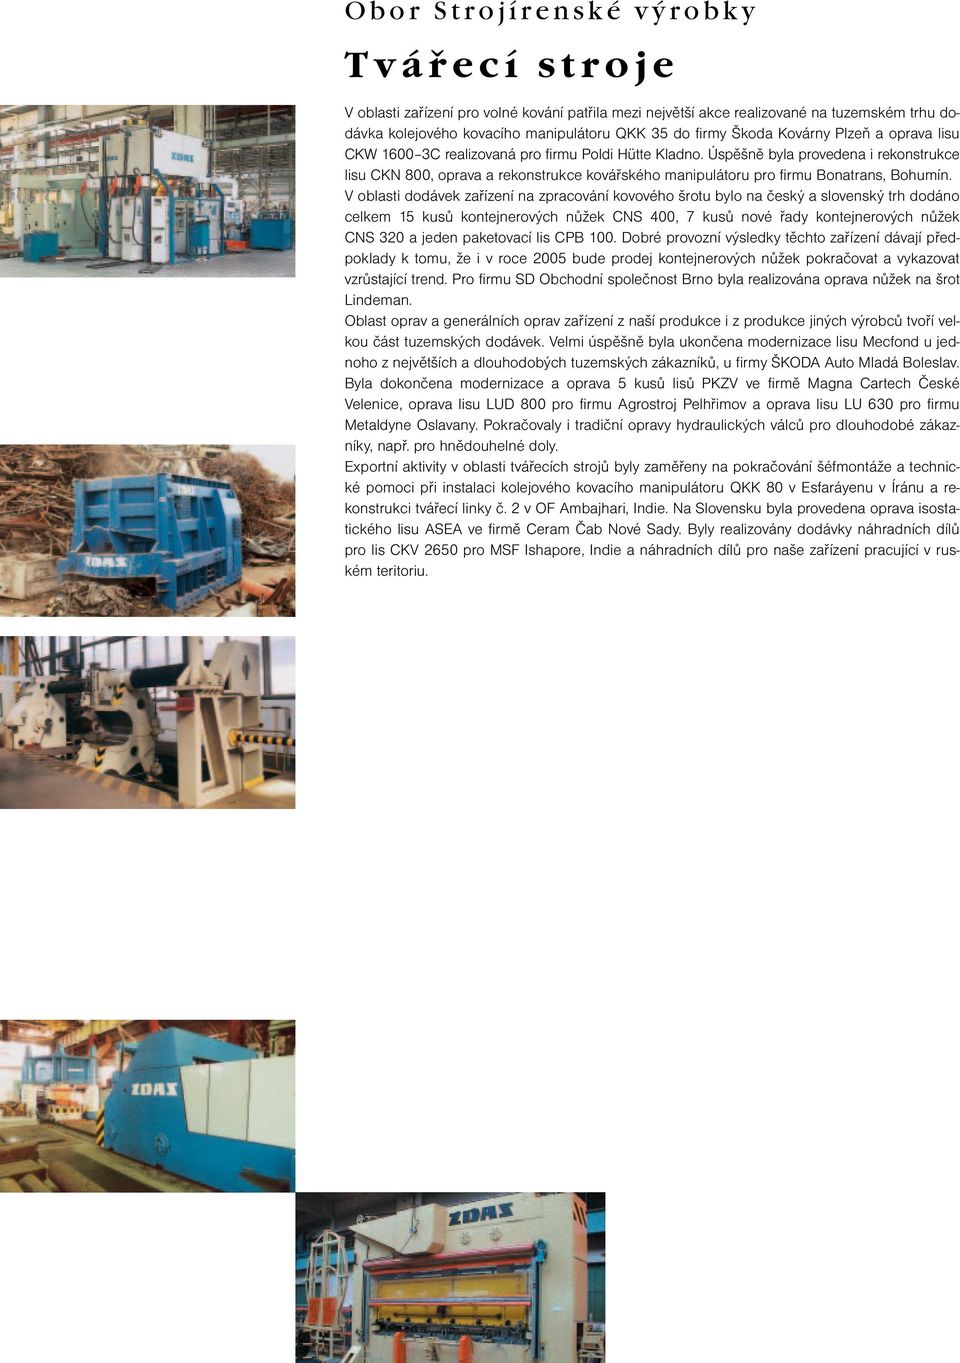 Úspěšně byla provedena i rekonstrukce lisu CKN 800, oprava a rekonstrukce kovářského manipulátoru pro firmu Bonatrans, Bohumín.